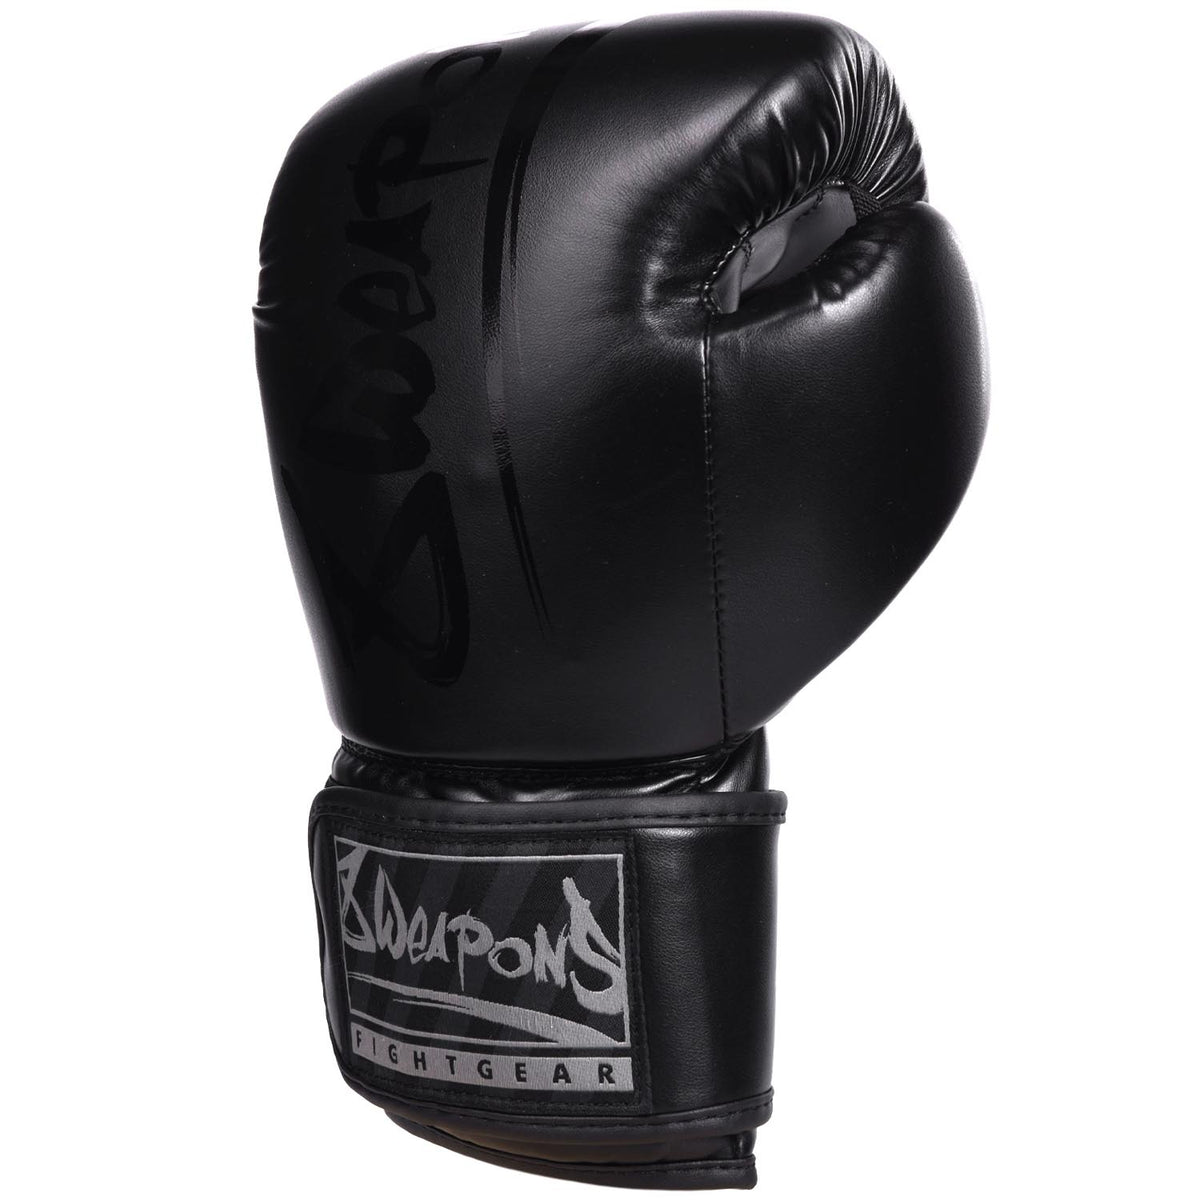 U.N.O. Boxhandschuh Black Pro 10 Unzen bei Marktkauf online bestellen